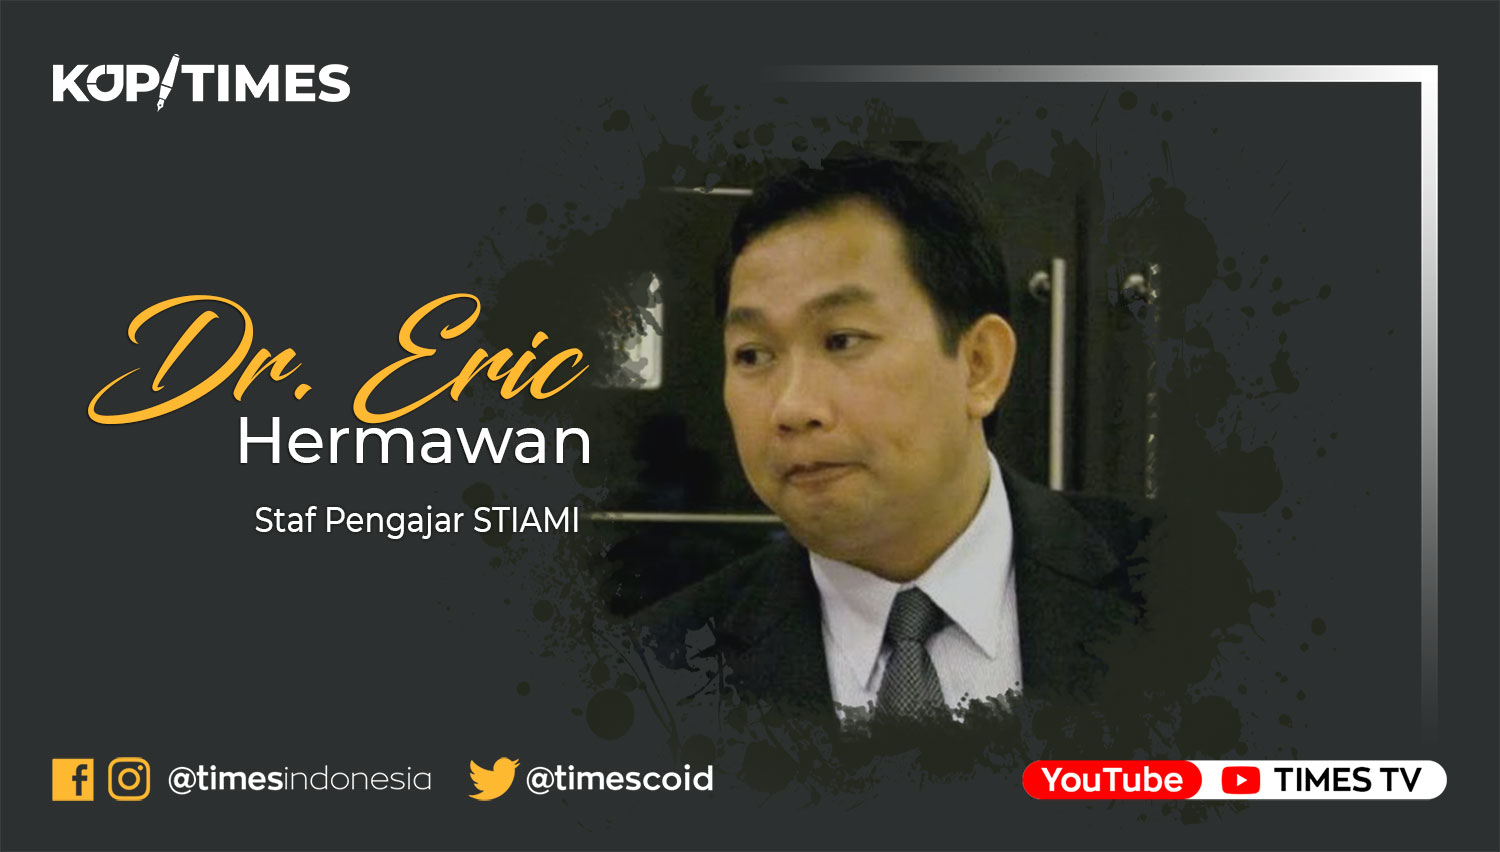 Dr. Eric Hermawan (Staf Pengajar STIAMI)